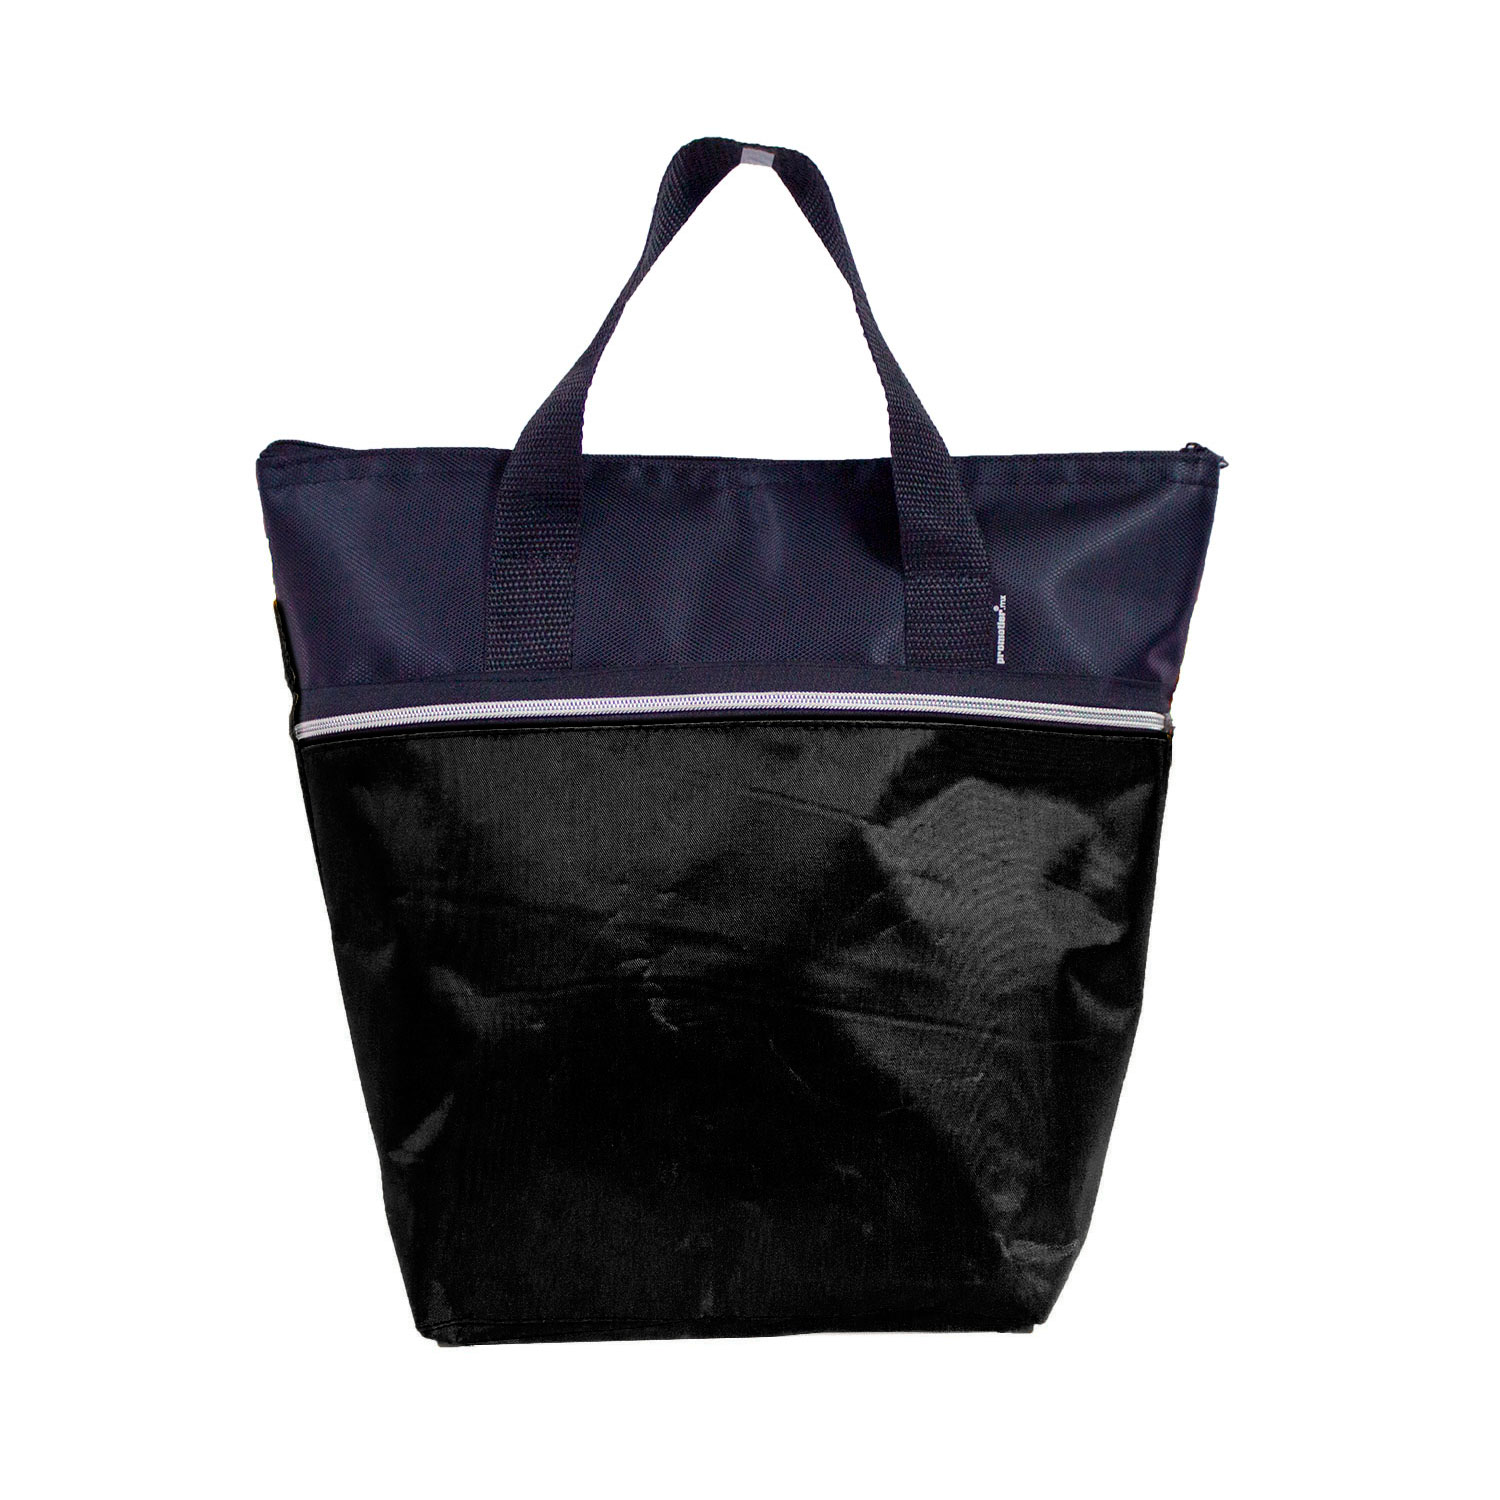 HIELERABEACHBAG, Hielera beachbag 12 pack termoahulada con bolsa interior aprovada por la FDA para contener aliementos y bebidas.